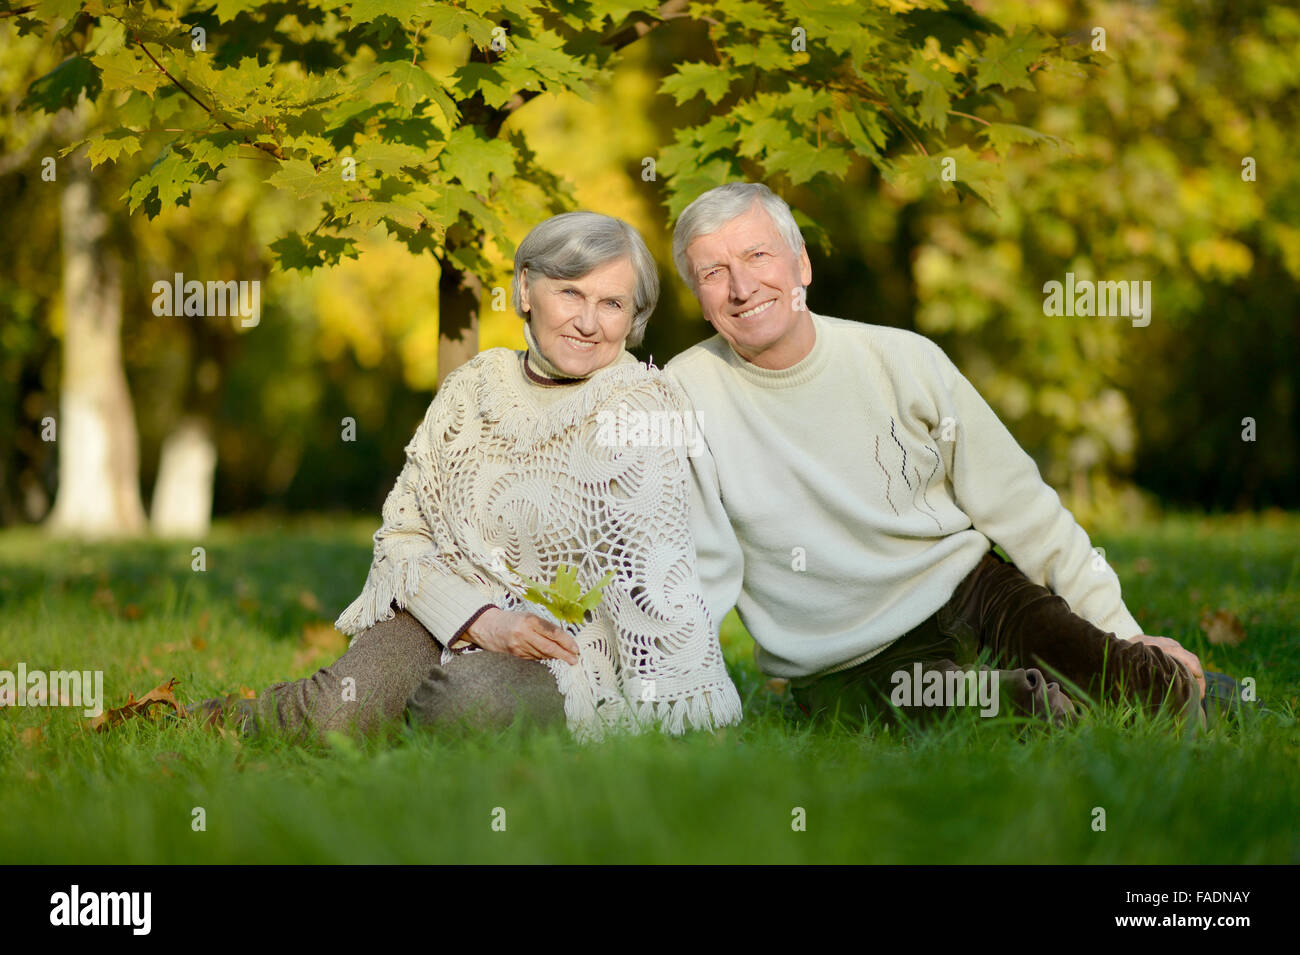 elderly couple sitting in autumn nature Stock Photo